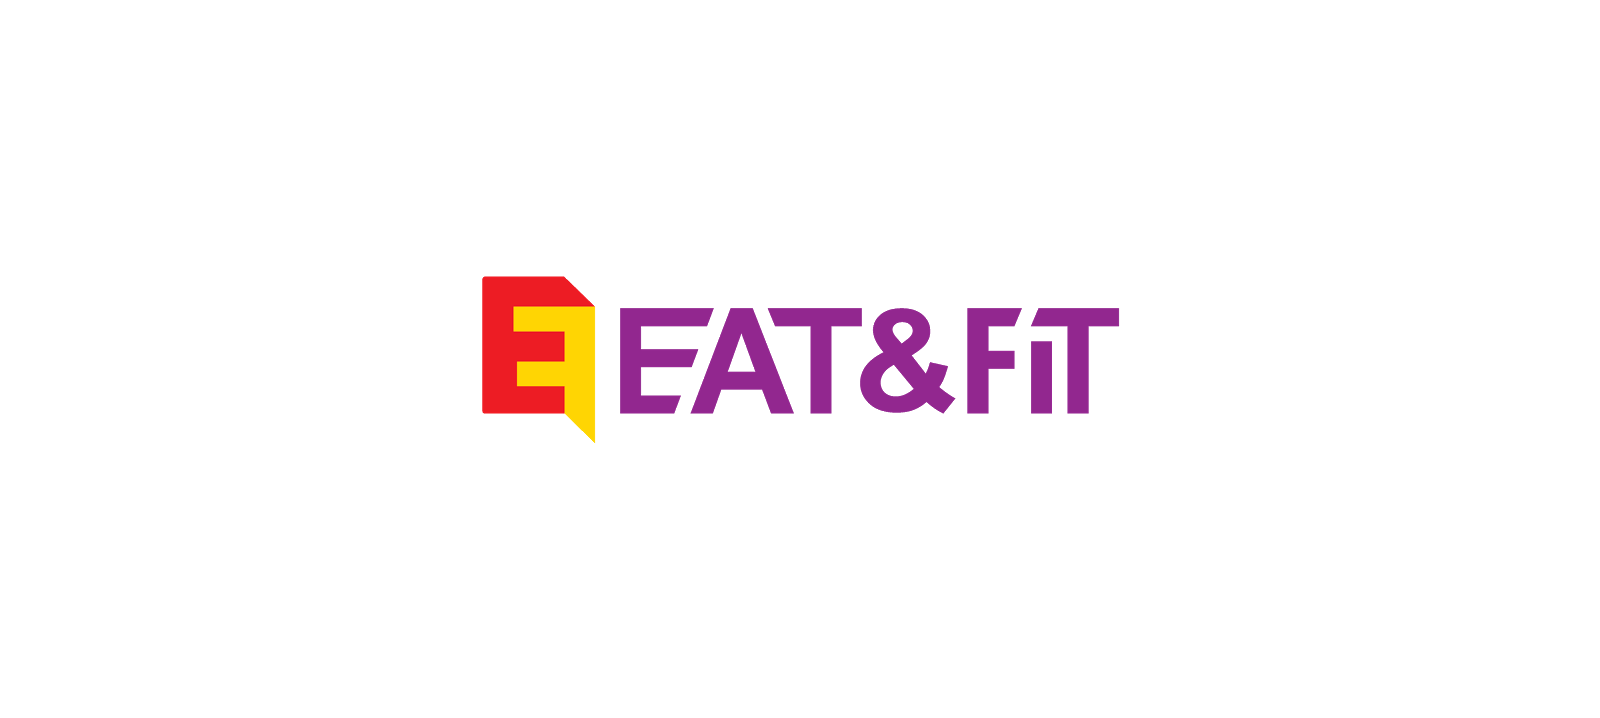 Eat & Fit